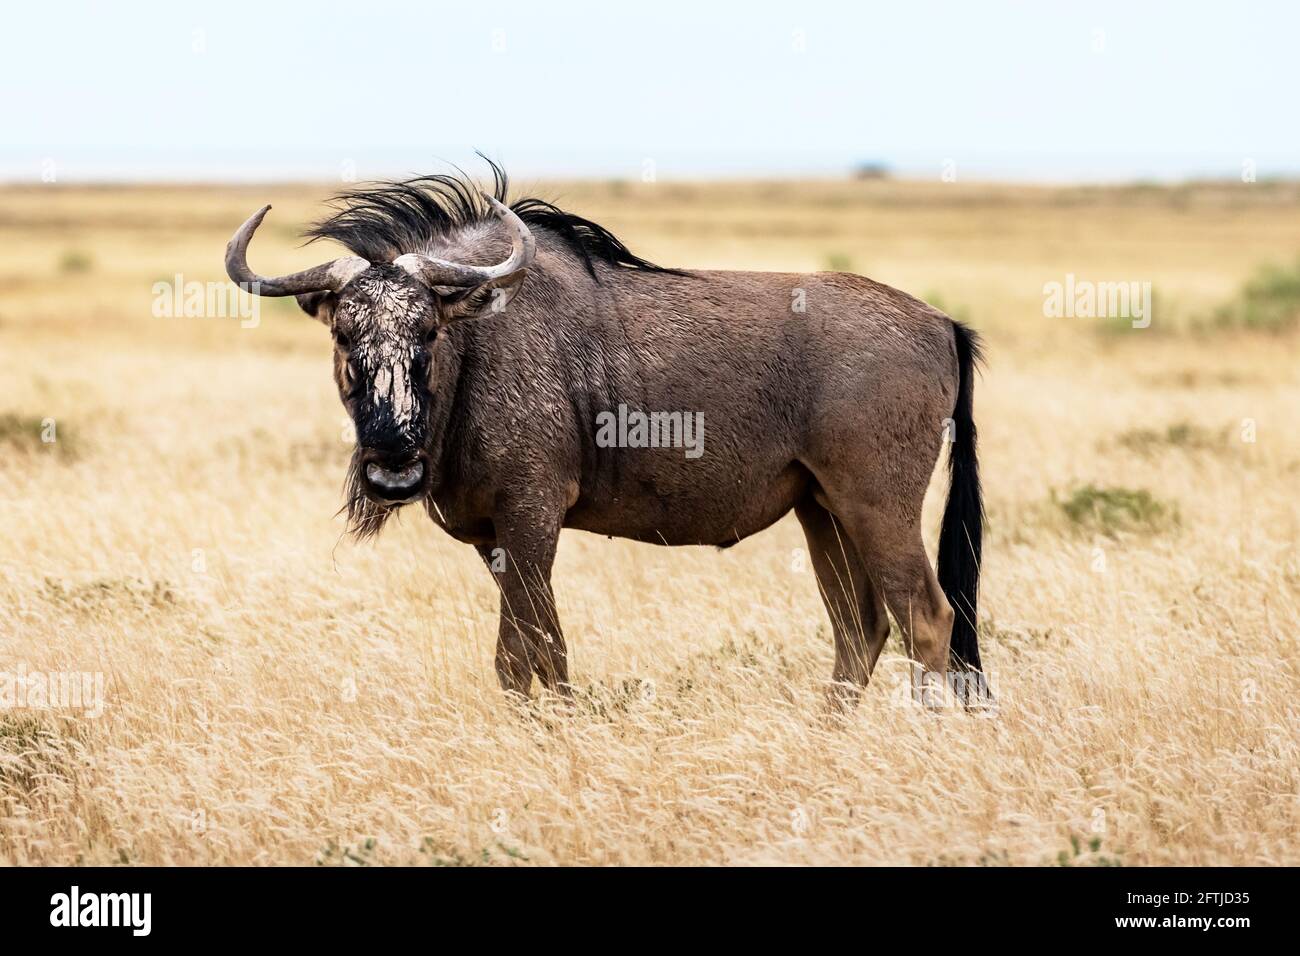 Gran antílope africano GNU caminando en hierba seca amarilla Foto de stock